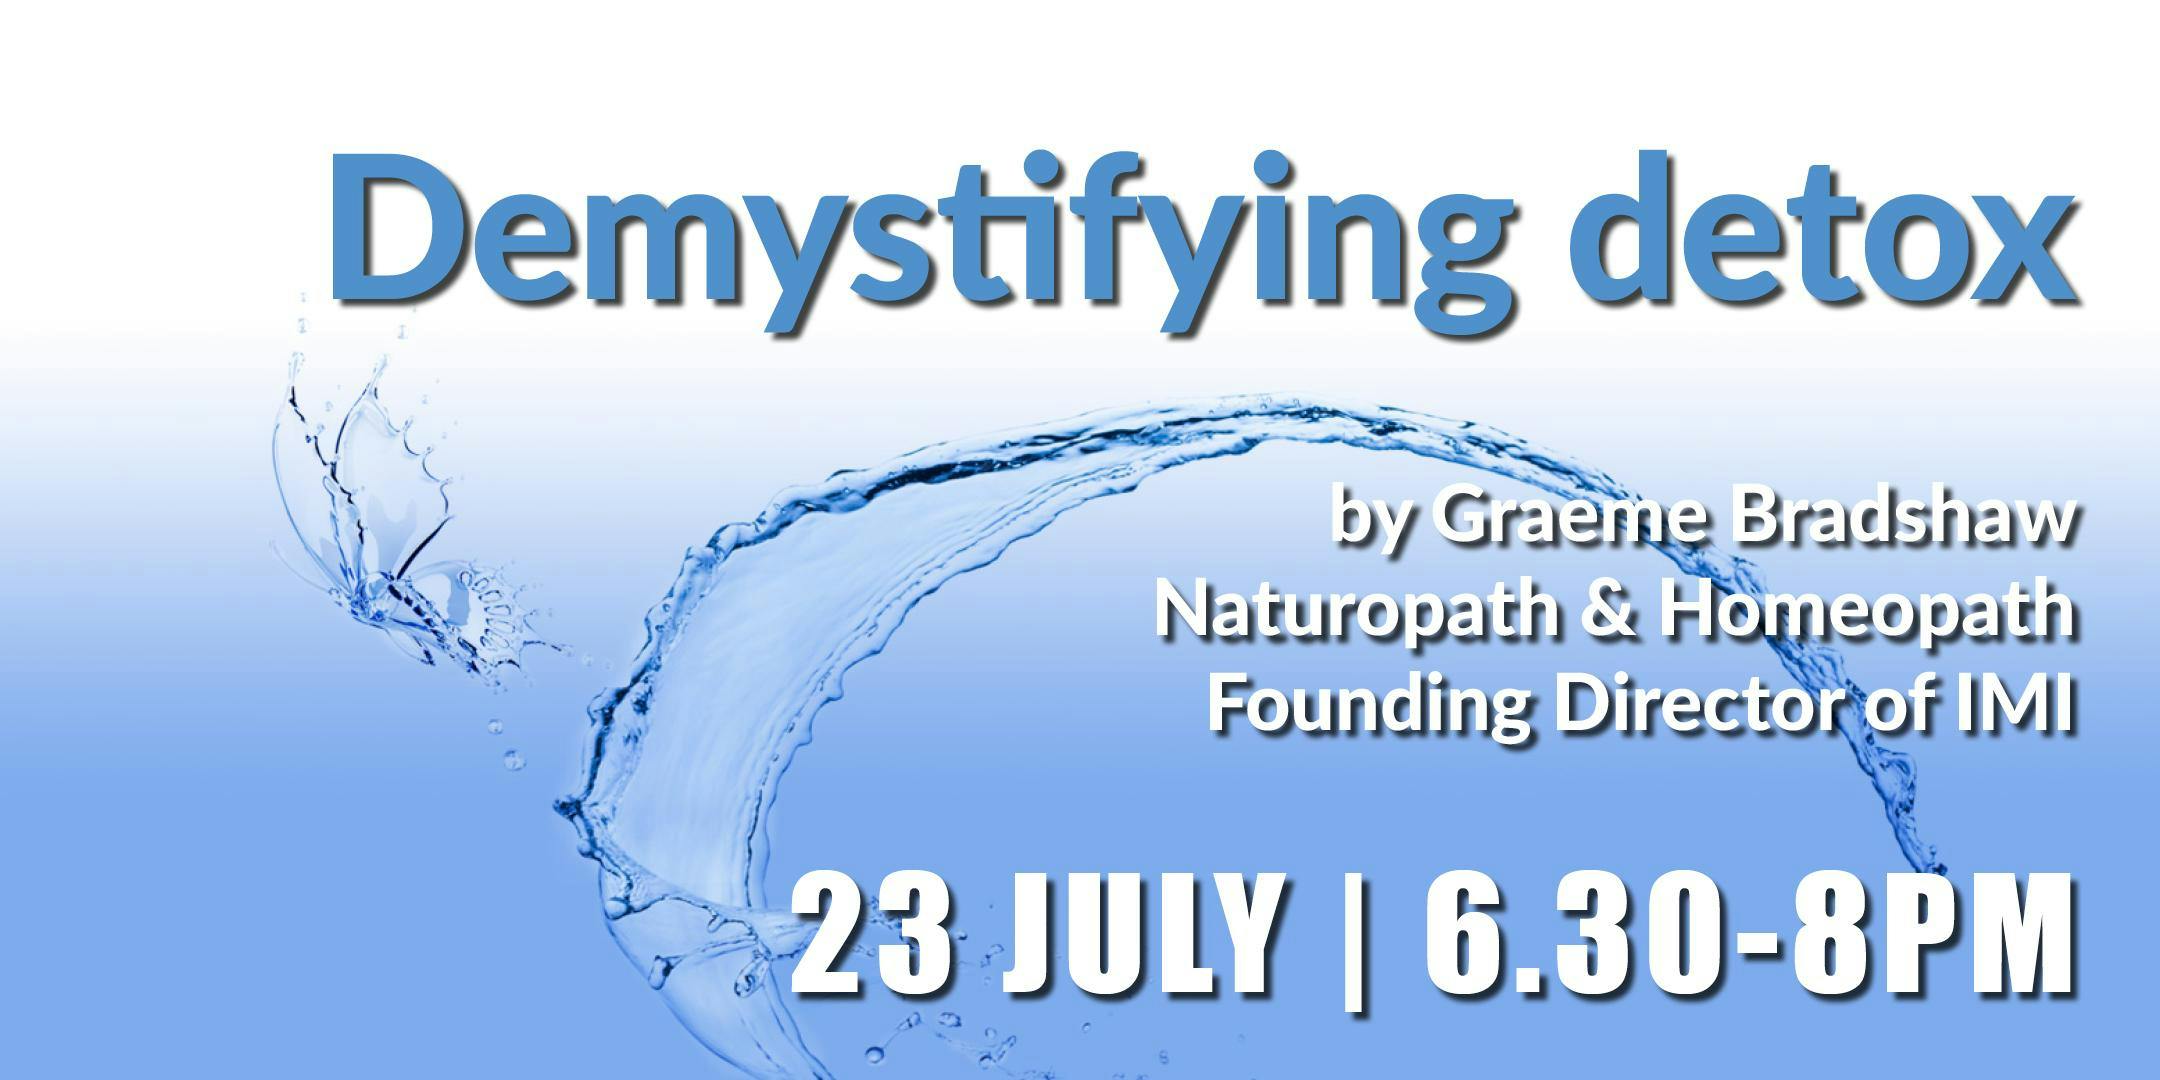 Demystifying detox by Graeme Bradshaw (23 July)